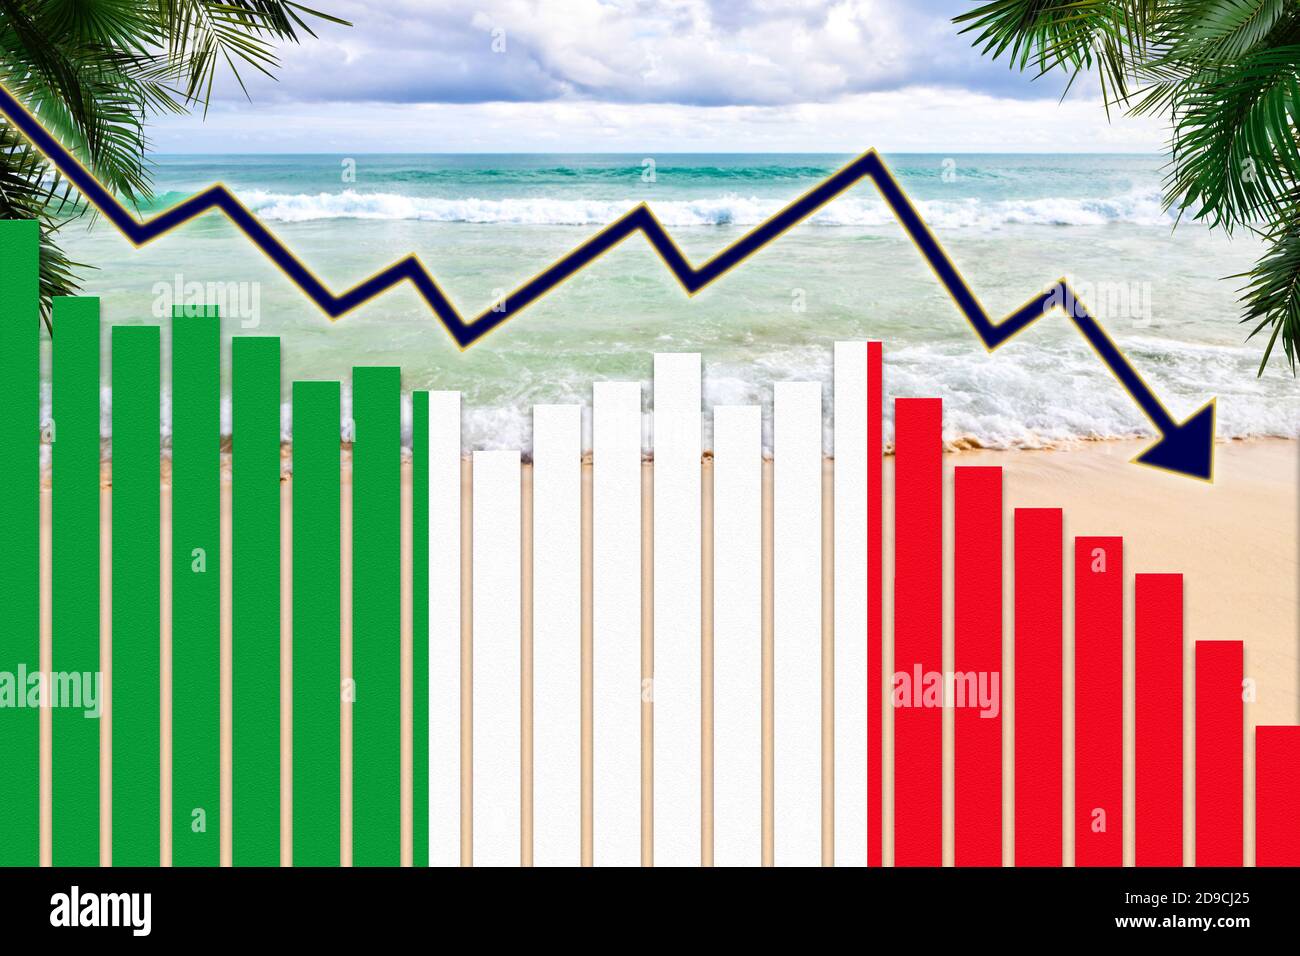 COVID-19 pandémie de coronavirus impact sur l'Italie concept de l'industrie touristique montrant le fond de la plage avec drapeau italien sur les graphiques à barres tendance à la baisse. Banque D'Images